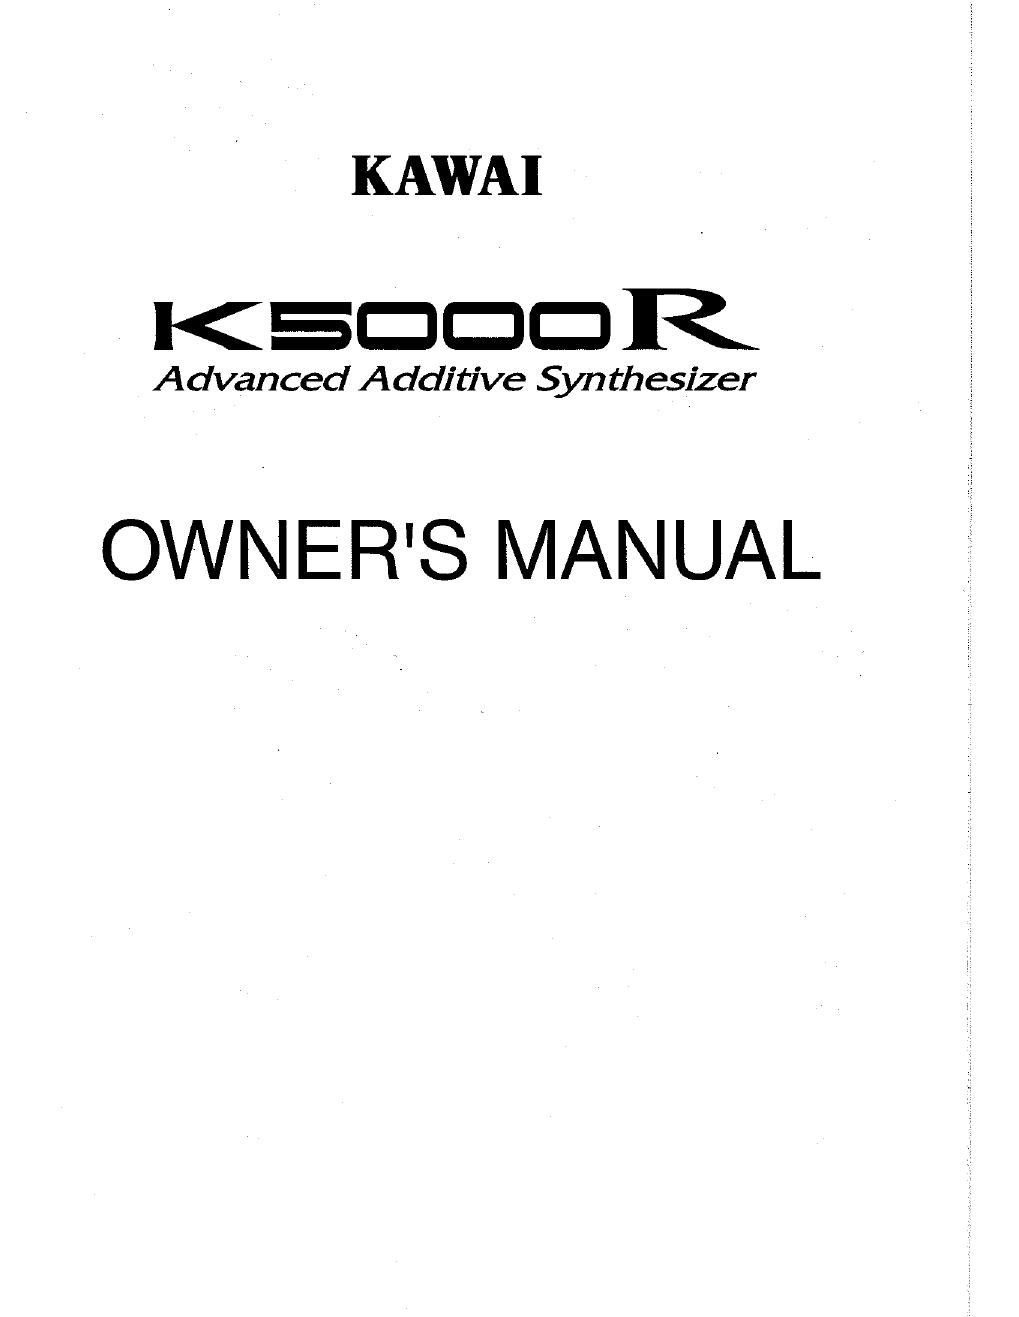 kawai k 5000 r manual